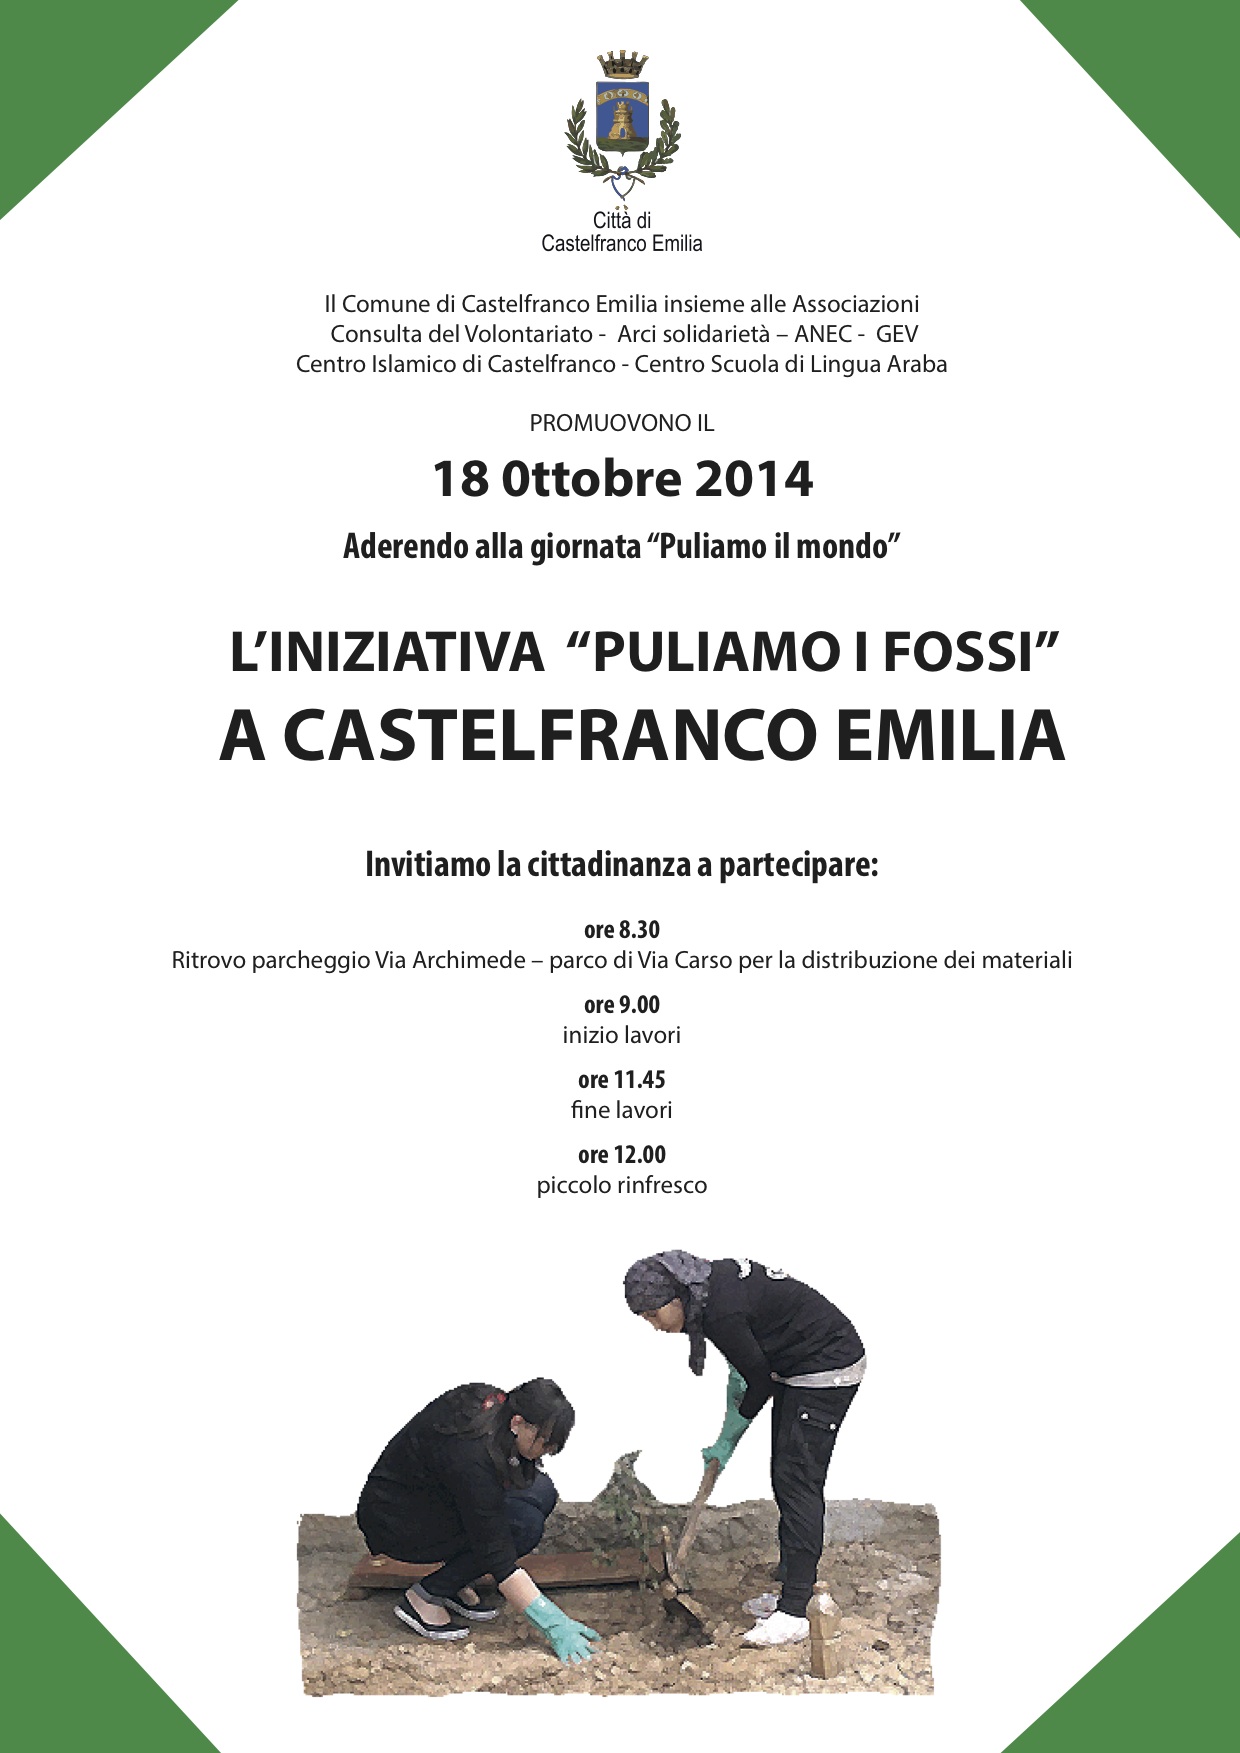 Sabato 18 ottobre iniziativa Puliamo i fossi a Castelfranco Emilia  foto 